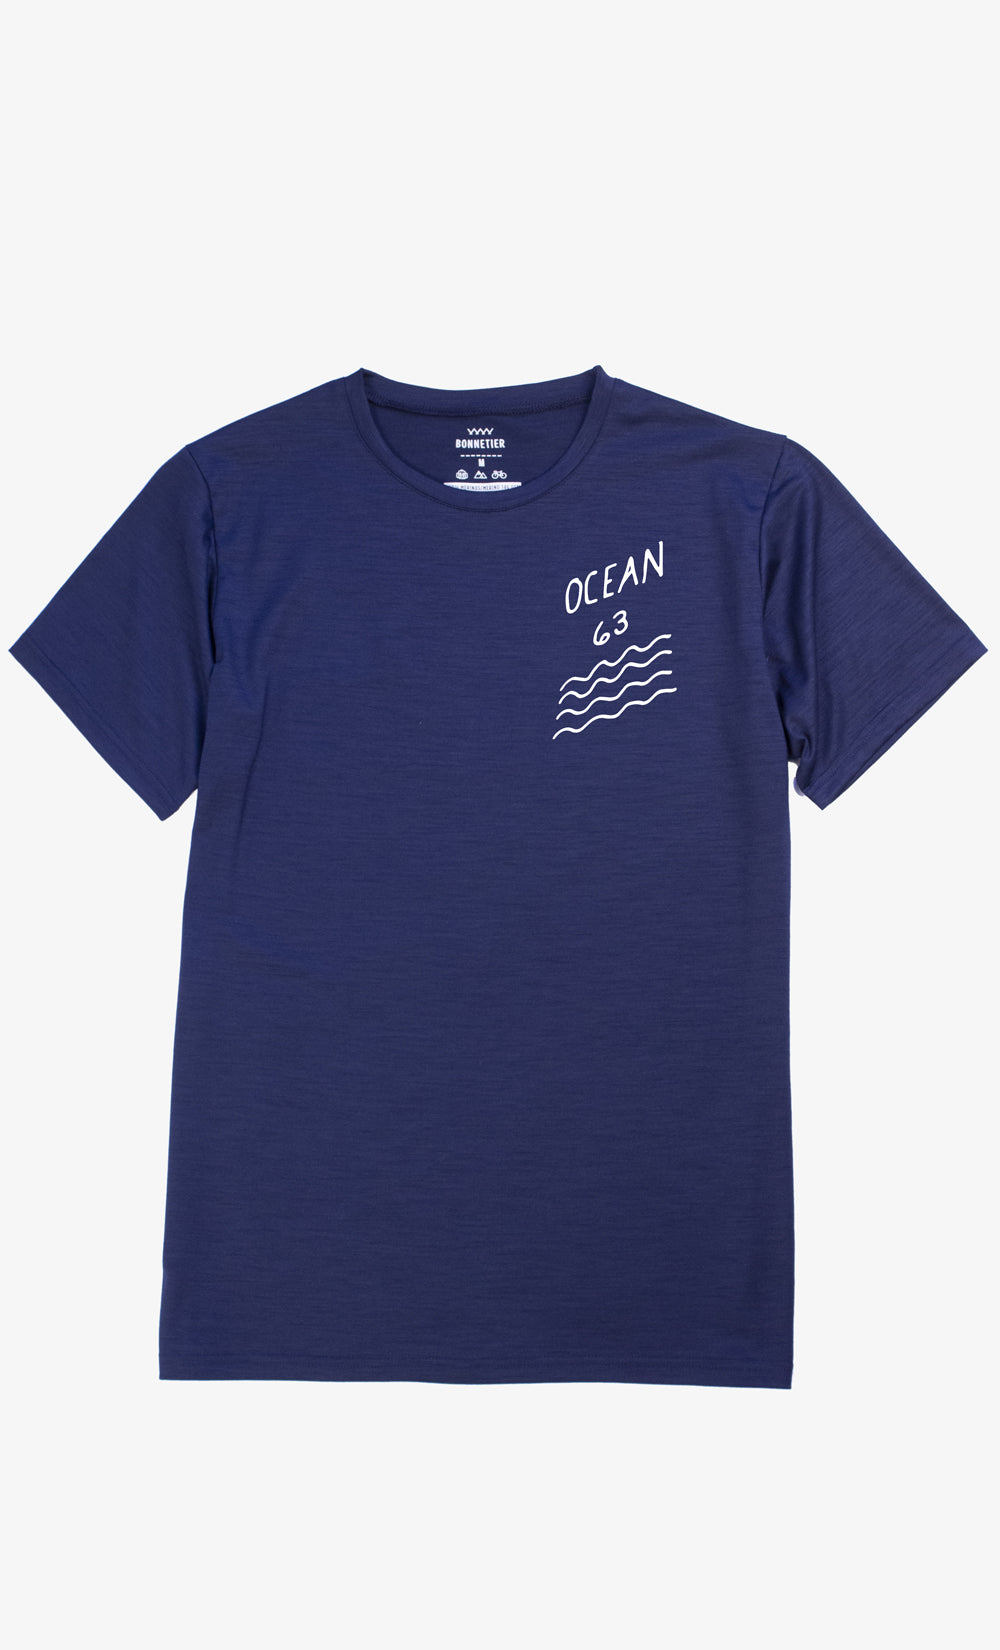 Navy Men's Ultra Light Merino T-shirt  - Ocean 63